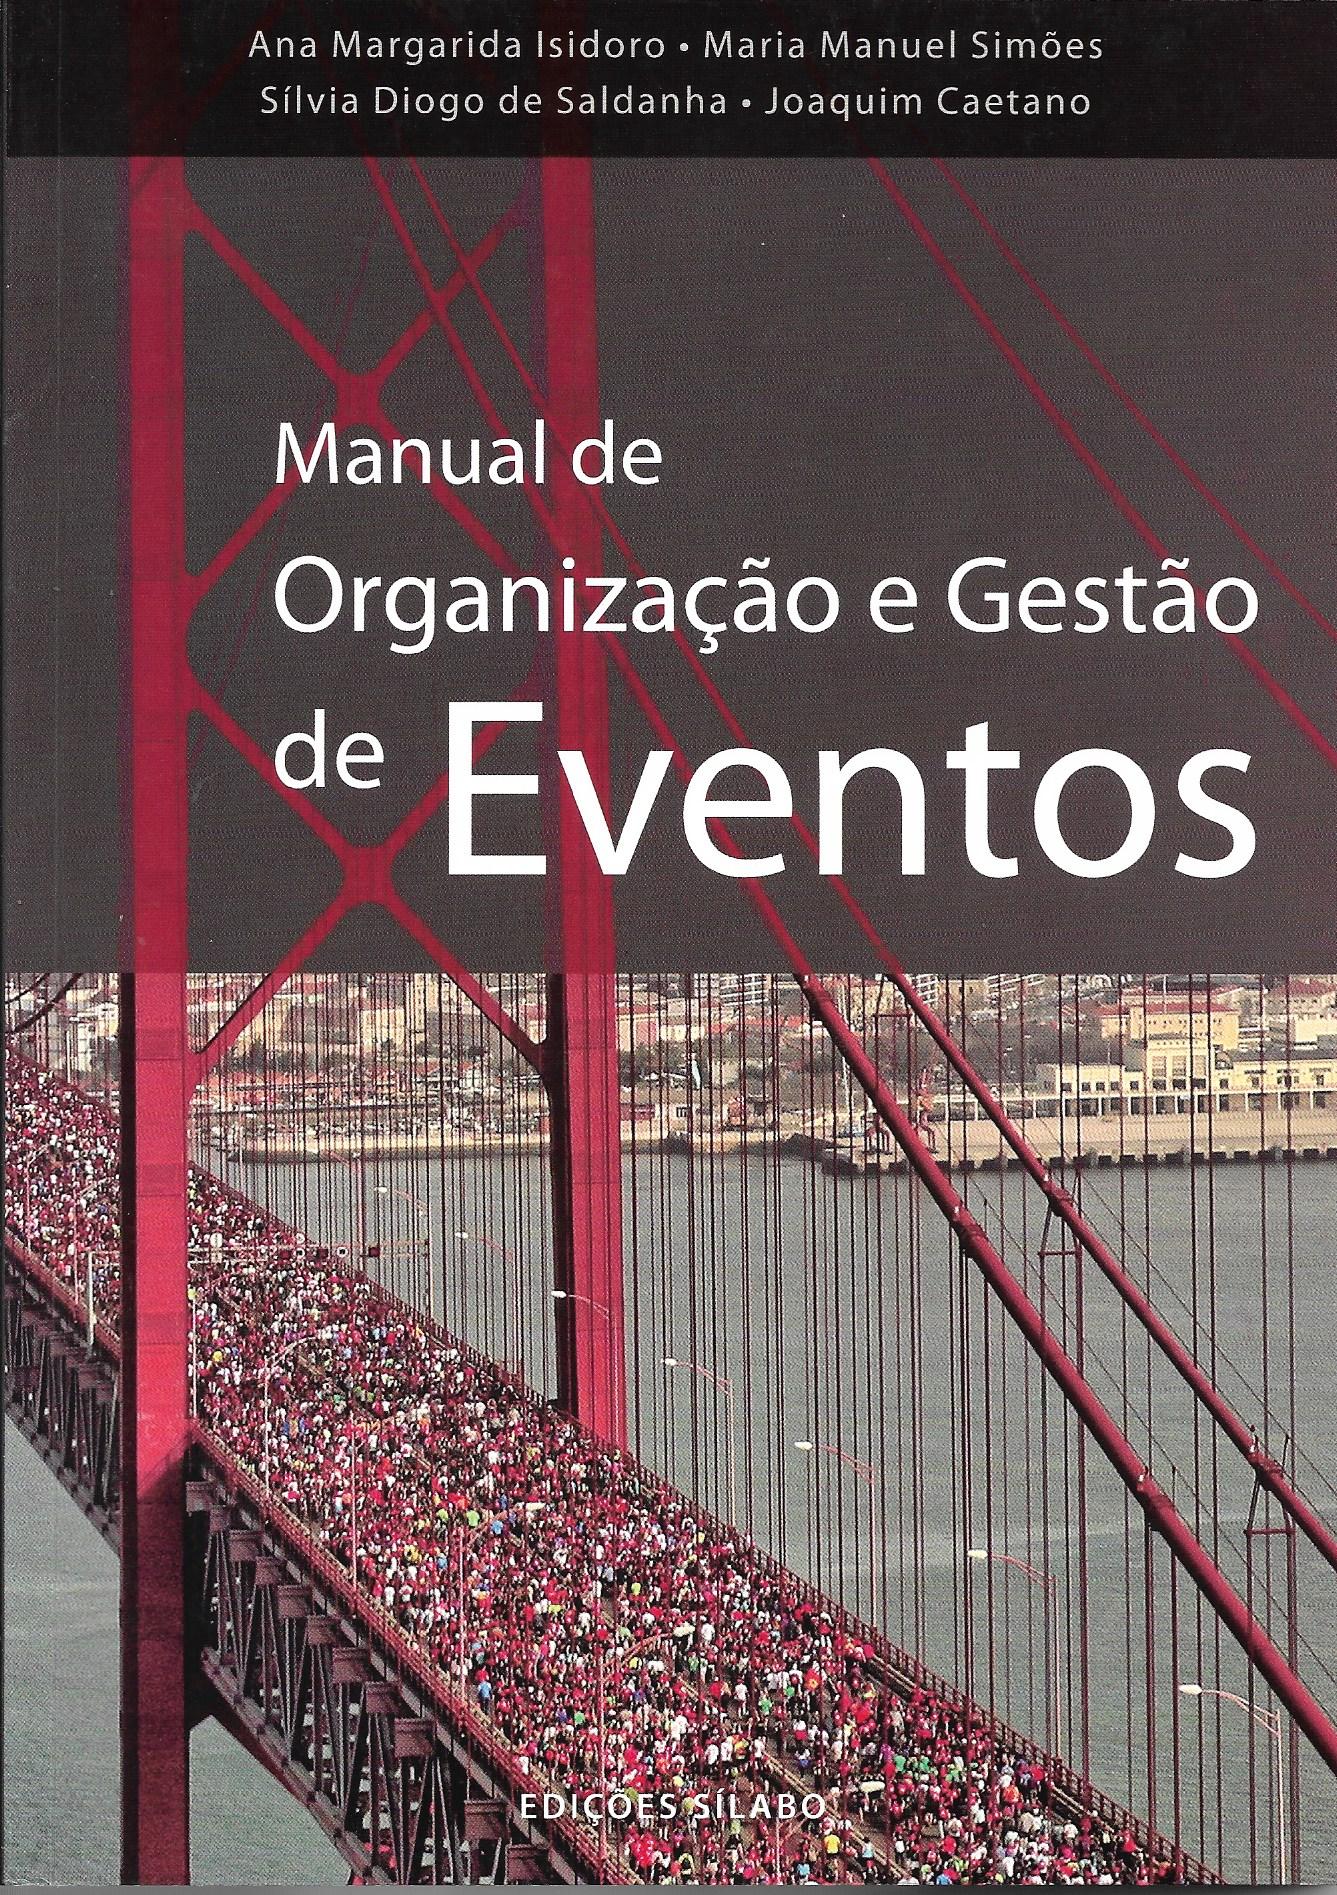 Manual de Organização e Gestão de Eventos